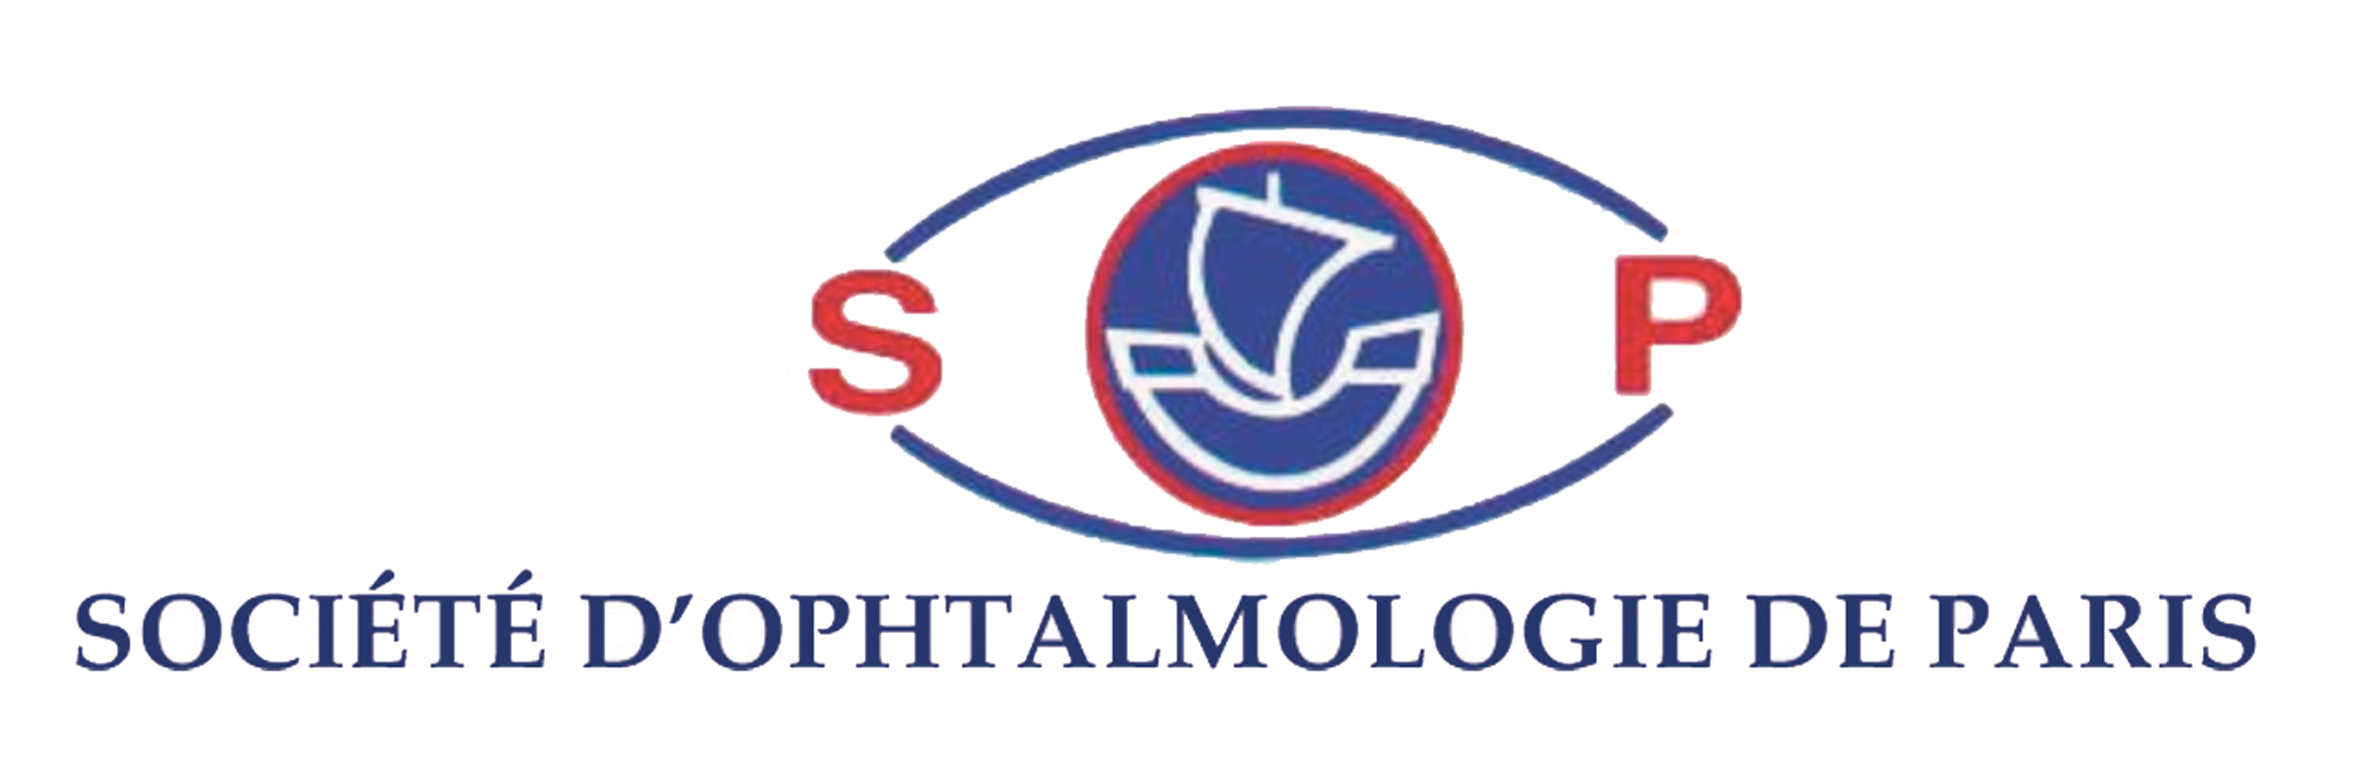 Réunion Plénière des Sociétés d'Ophtalmologie de Paris (SOP)